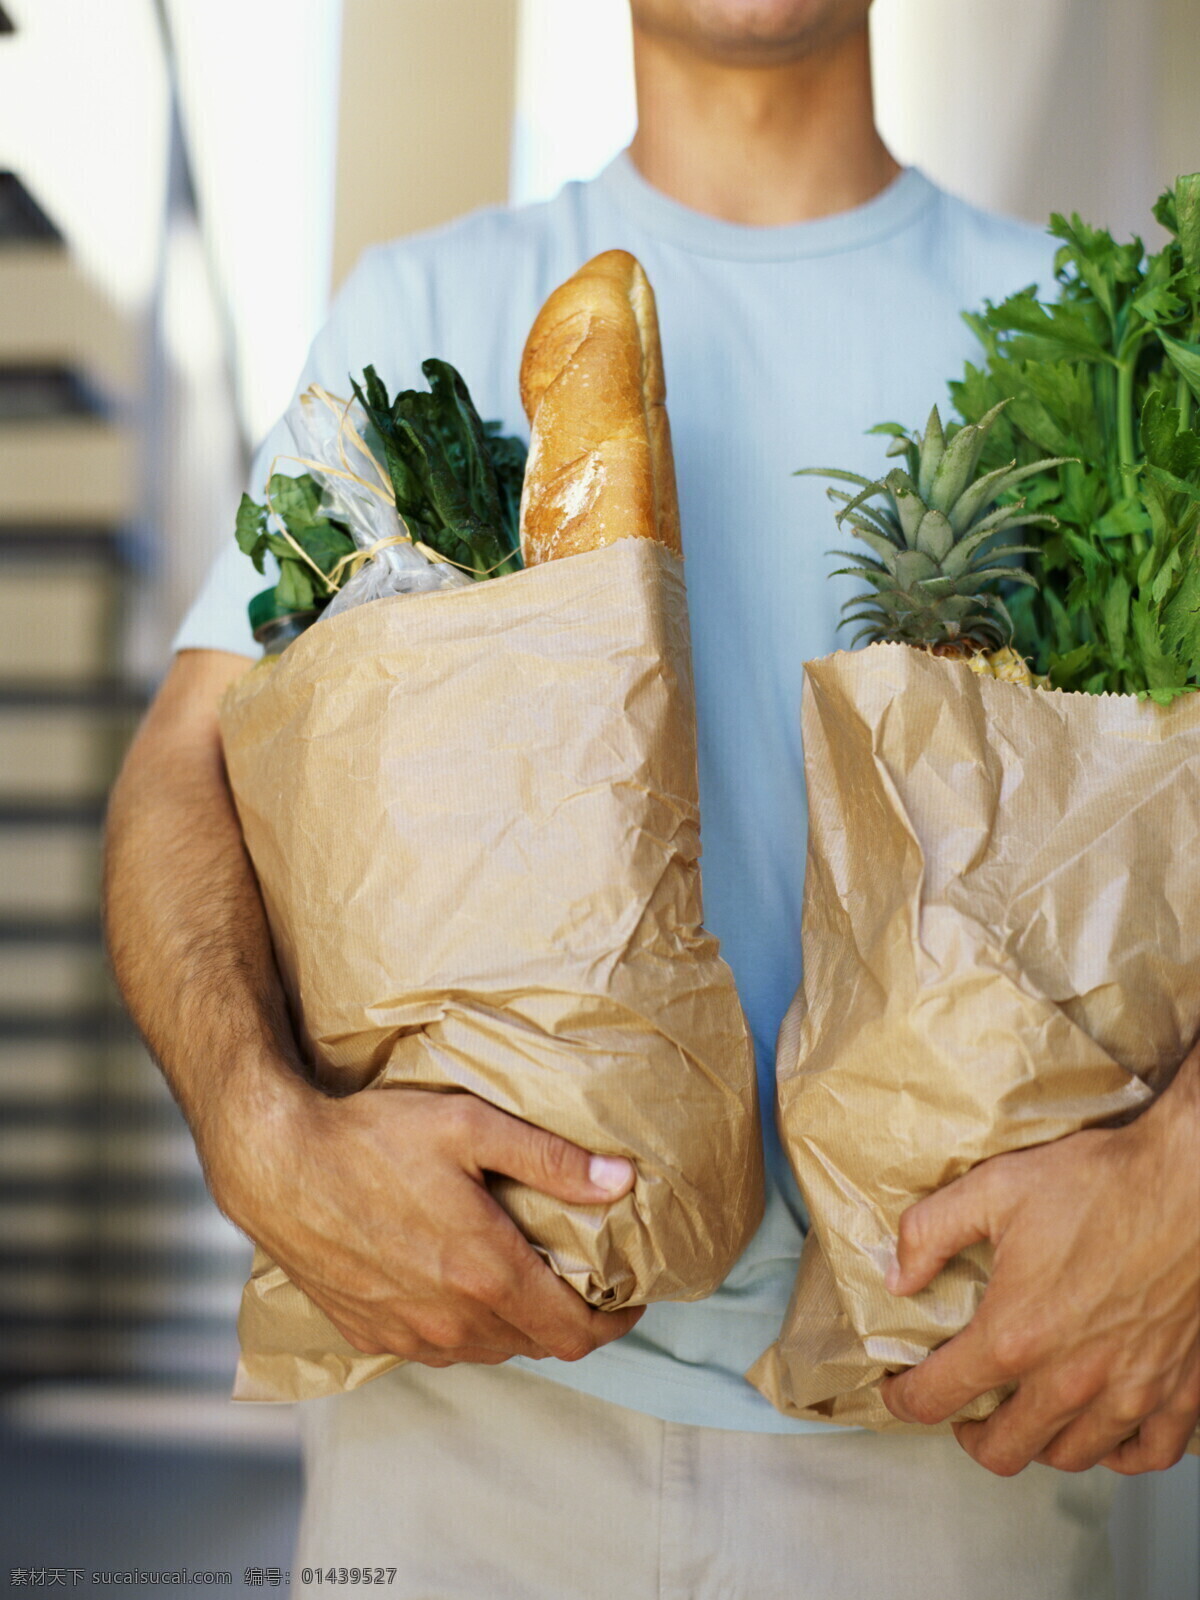 手 购物袋 男人 里 蔬菜水果 蔬菜 水果 面包 菠萝 芹菜 男性高清图片 男性男人 人物图库